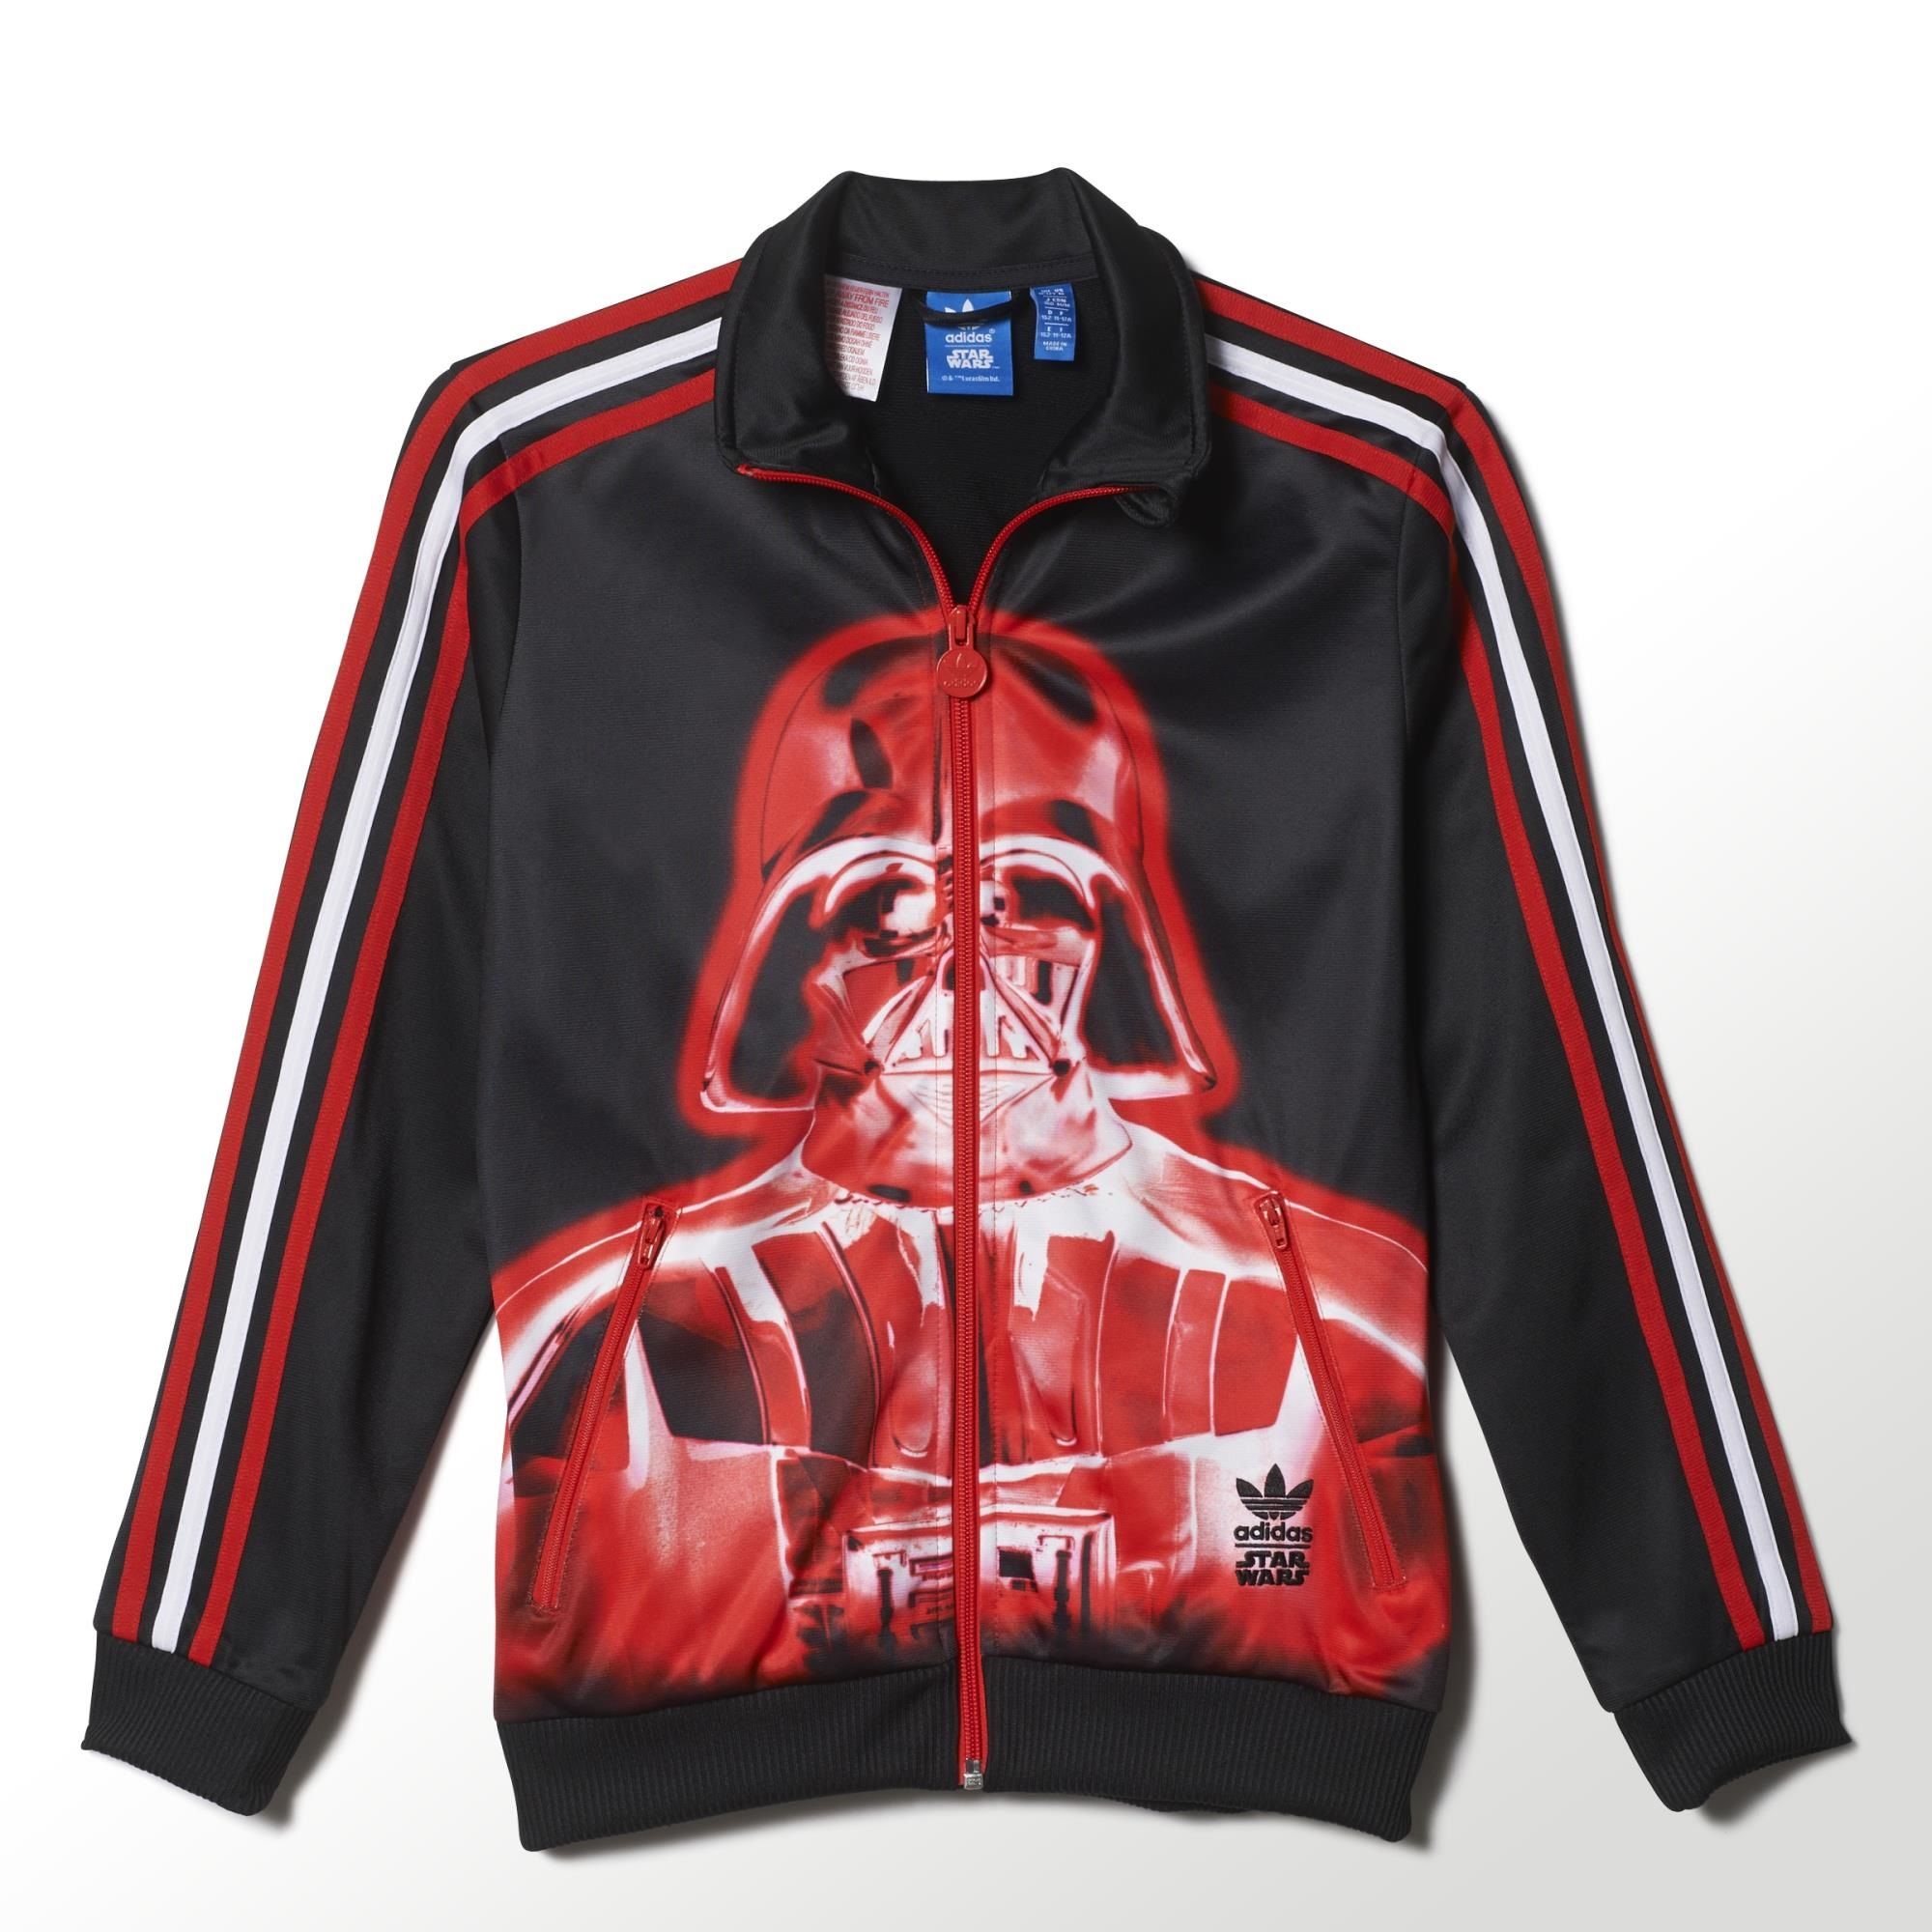 La playa parrilla Conmemorativo Adidas Originals Chaqueta Niño FB Star Wars Darth Vader (negro/r